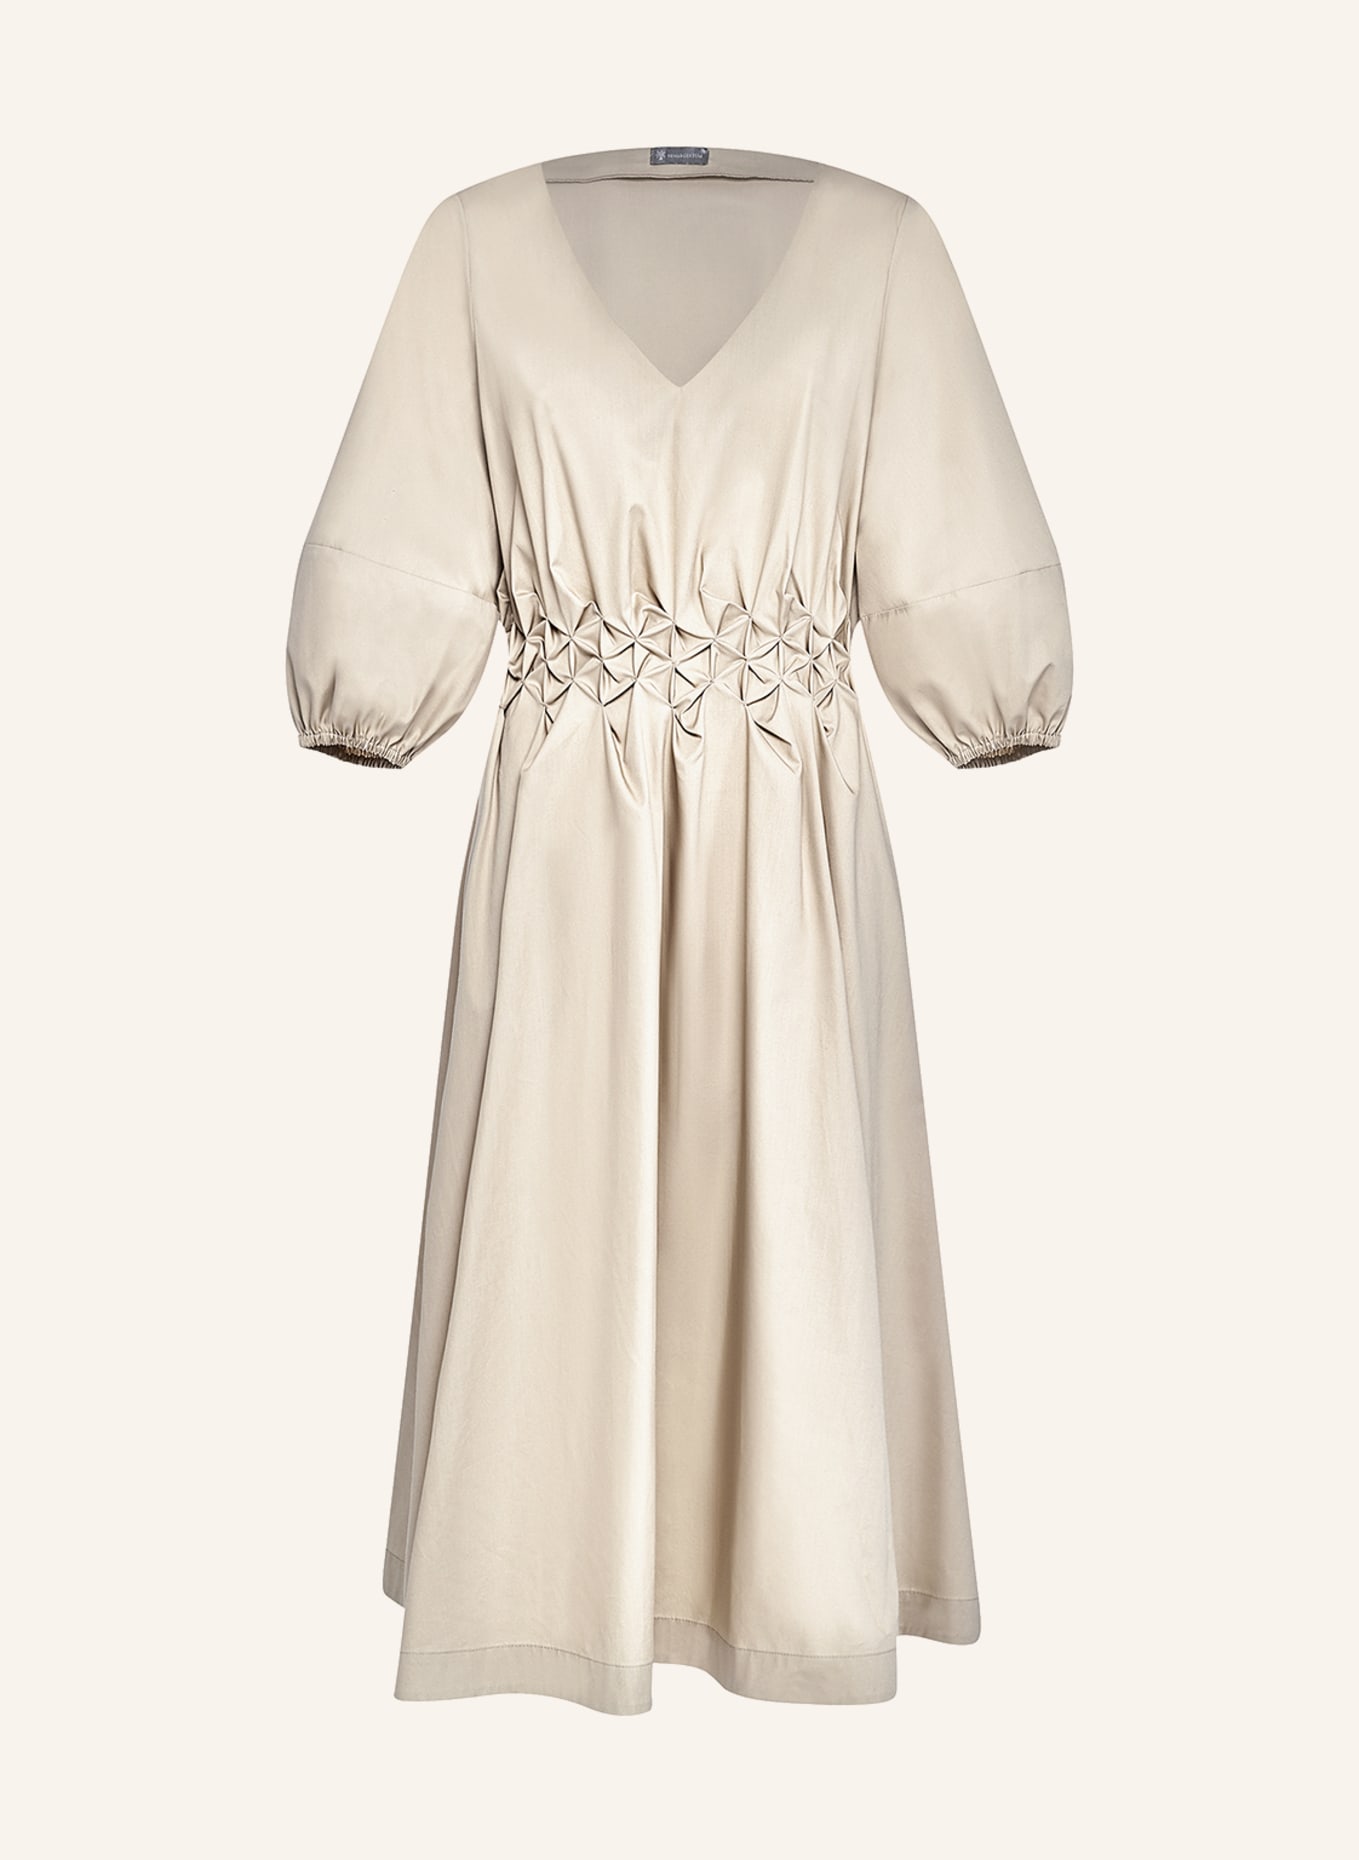 ARMARGENTUM Kleid HELENE, Farbe: BEIGE (Bild 1)